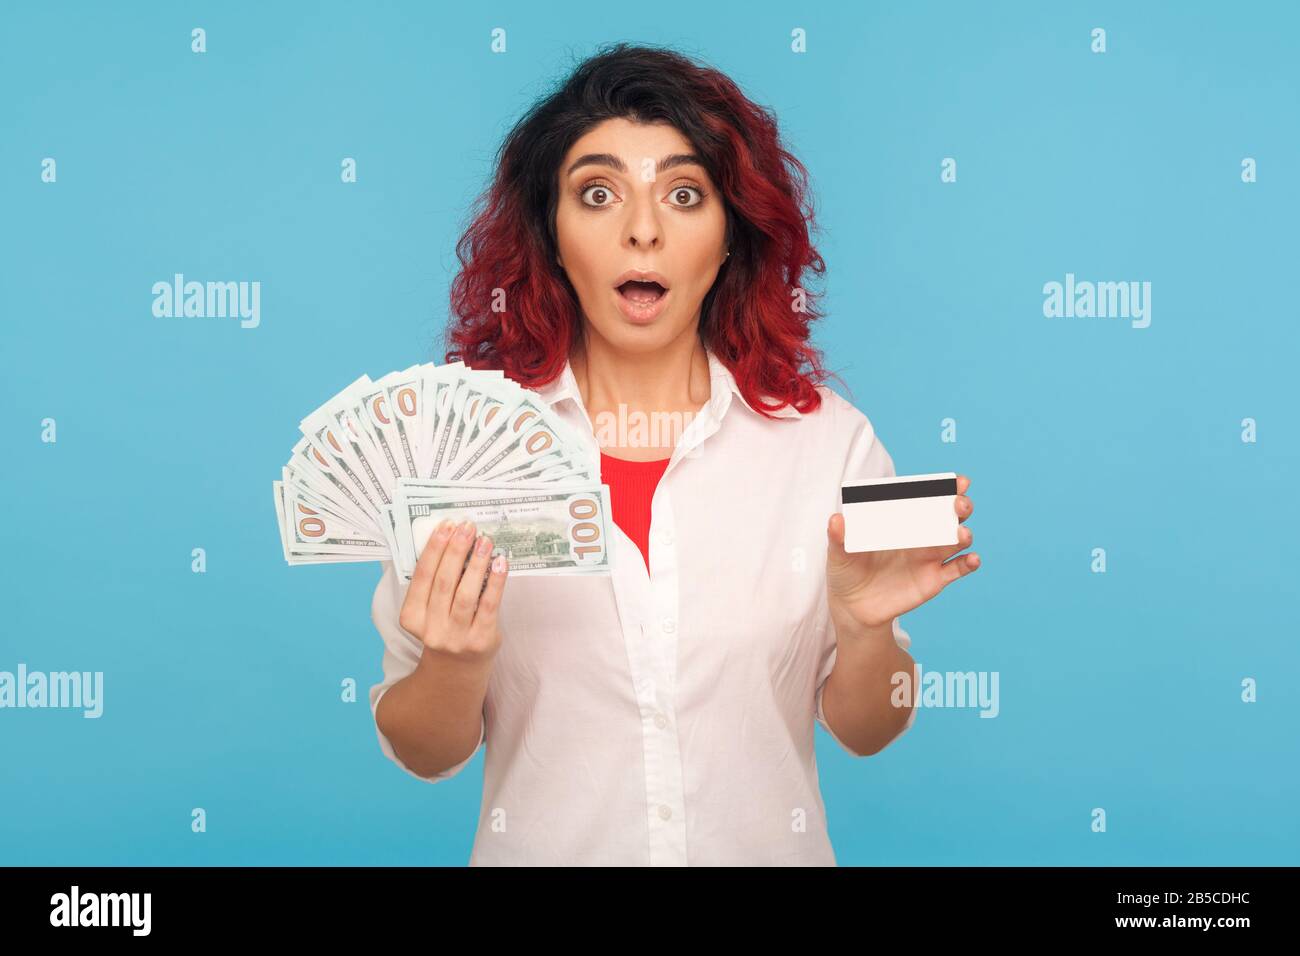 WOW, prêt bancaire pour les achats. Portrait d'une femme hipster surprise avec des cheveux rouges fantaisie tenant la carte de crédit, des billets de dollar et regardant avec étonnement choqué Banque D'Images